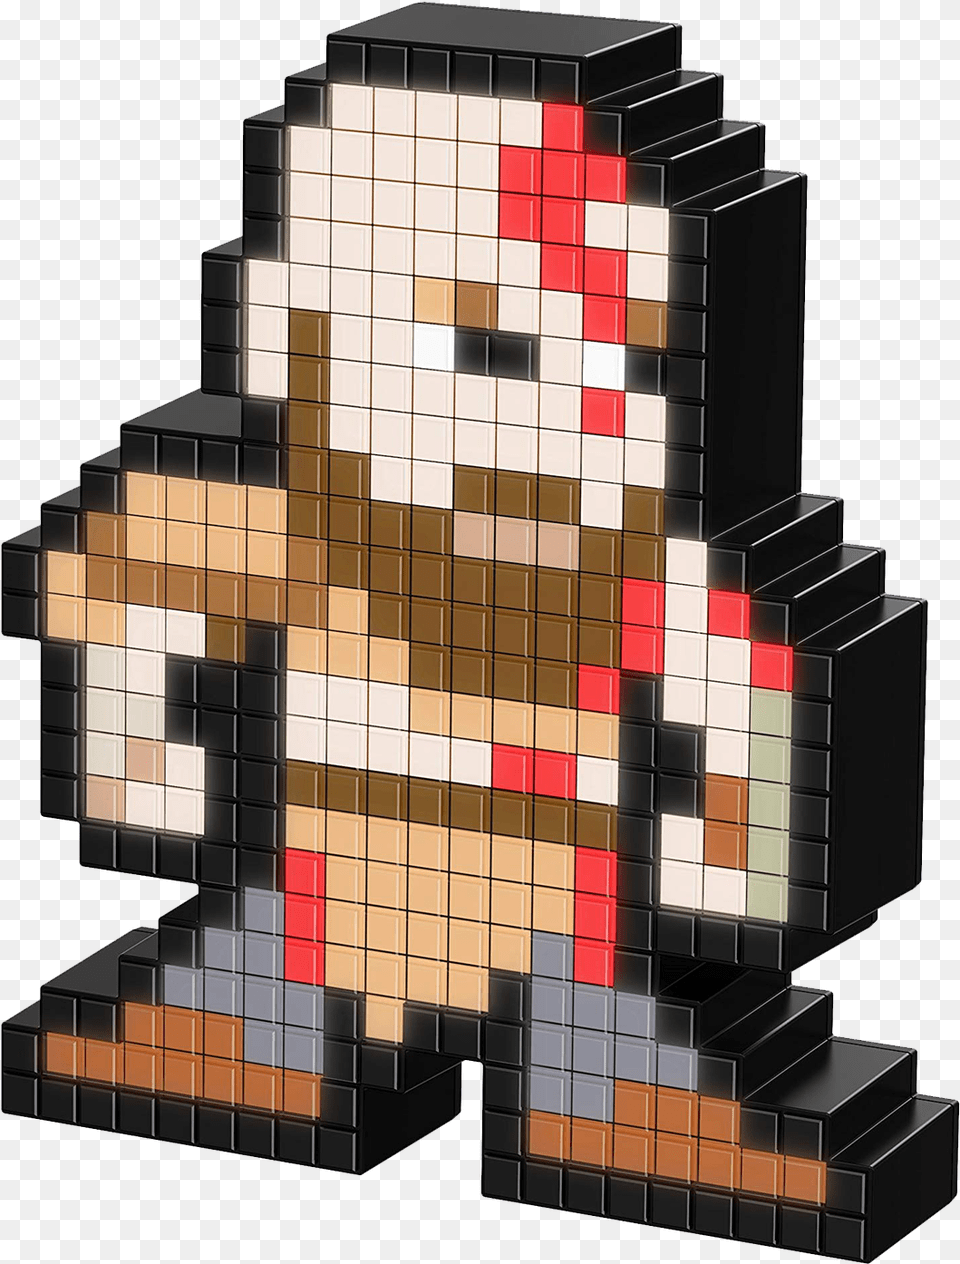 Kratos Pdp Pixel Pals Dc Flash, Architecture, Building, Art, Toy Png Image